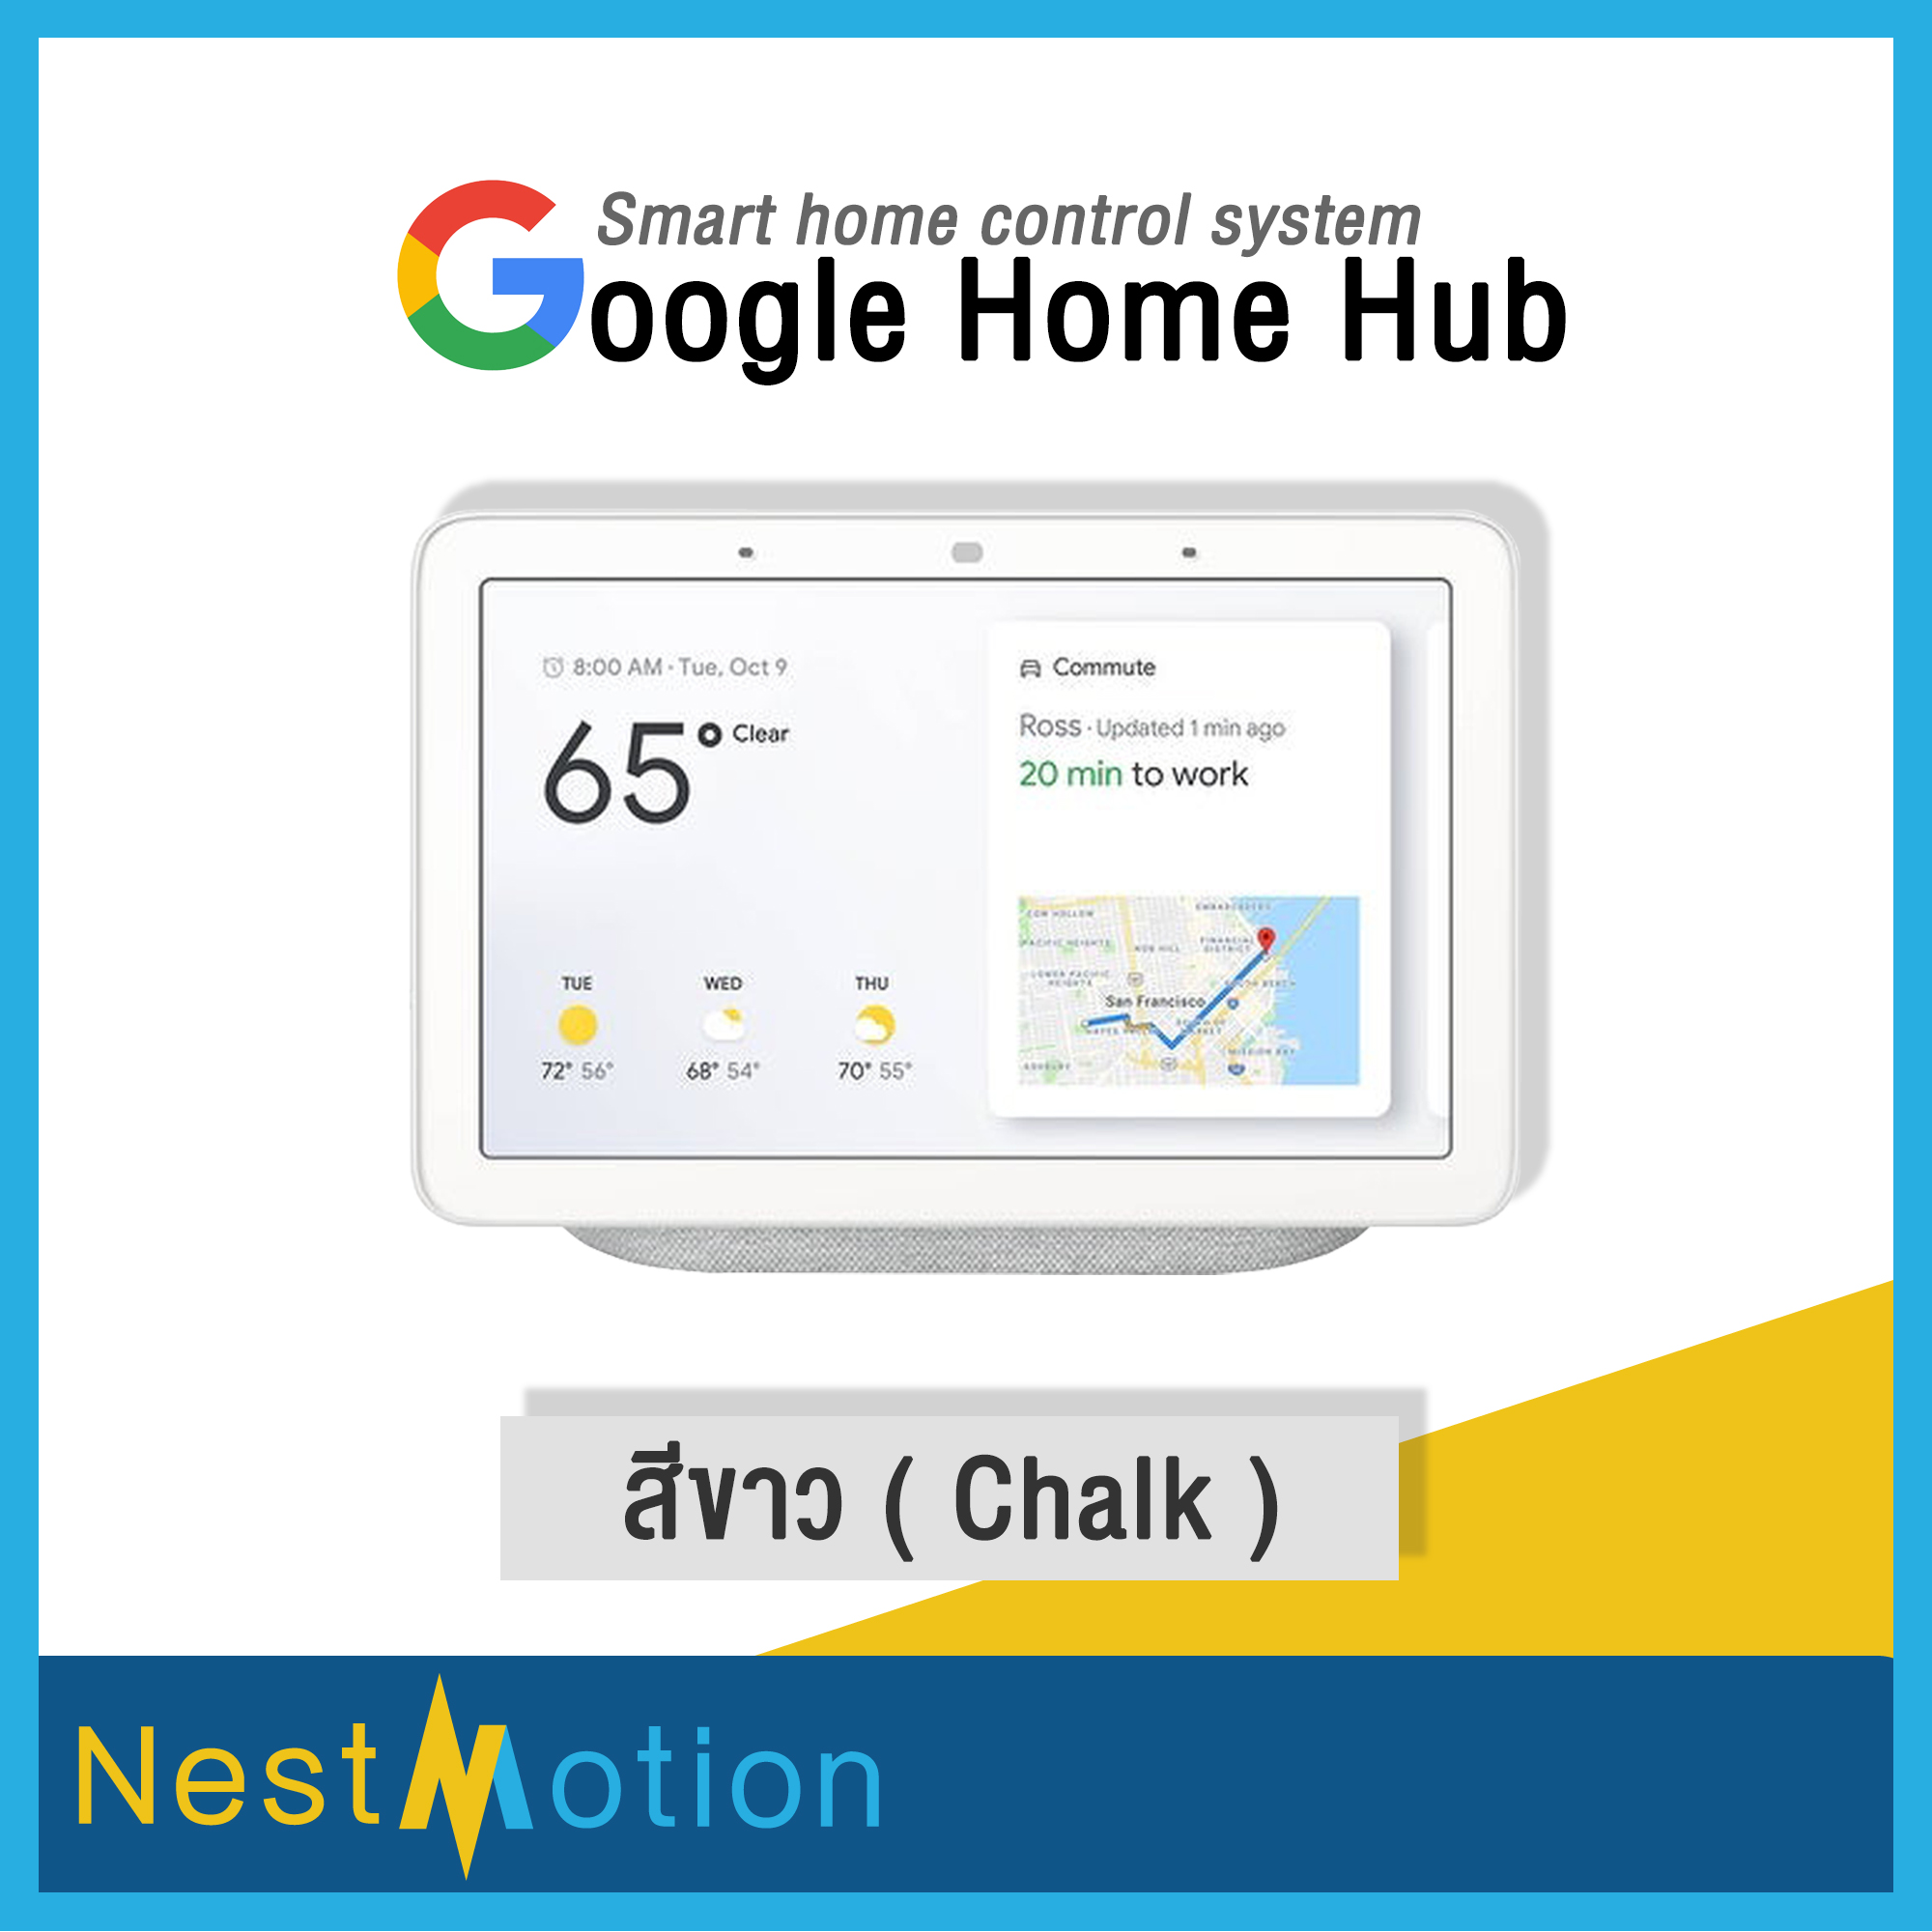 Google Home Hub - Smart home control system (Nest Hub) หน้าจอ+ลำโพง อัจฉริยะ เล่นวีดีโอ/เพลง ดูรูป แจ้งเตือนประจำวัน ตอบคำถาม และ ควบคุมอุปกรณ์ไฟฟ้าในบ้าน